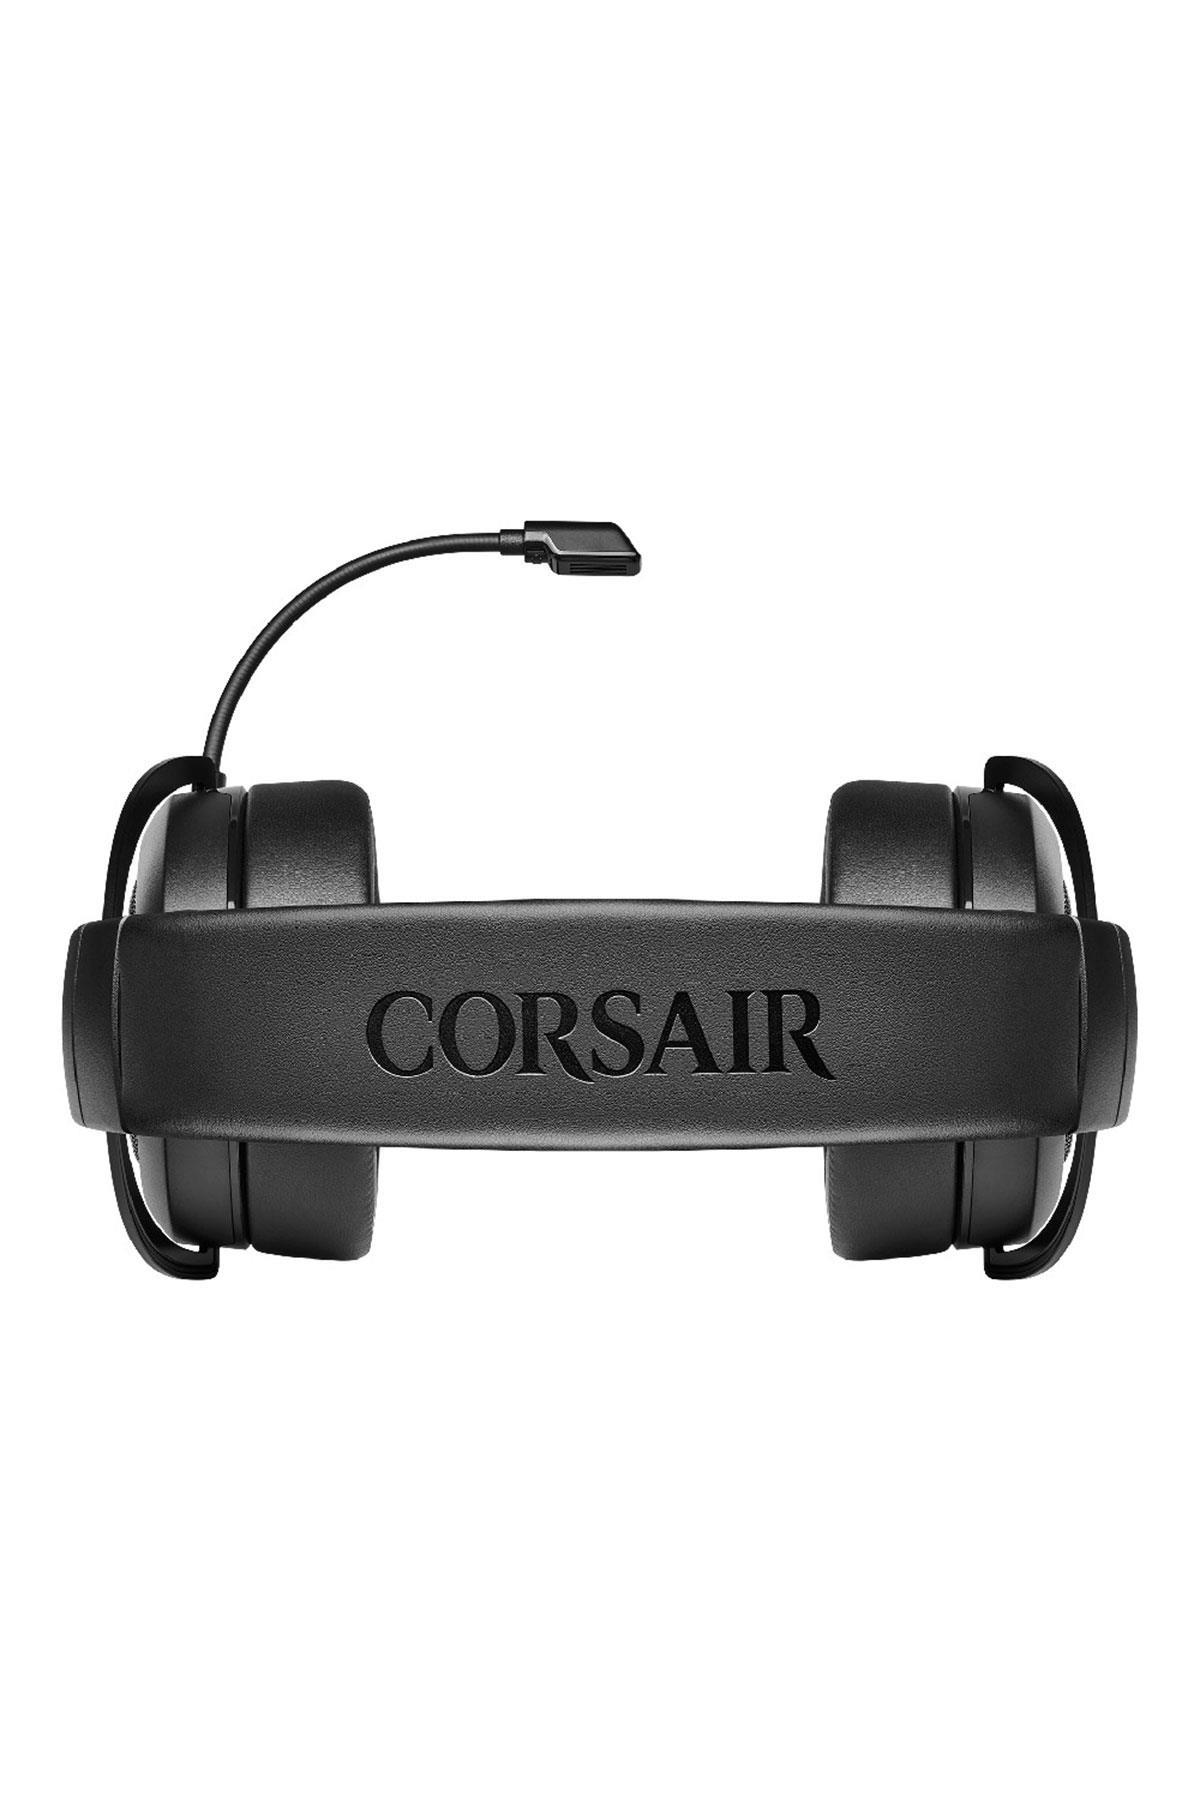 Corsair HS50 Pro Stereo Carbon Gaming Kulaklık CORSAIR Kulaklık